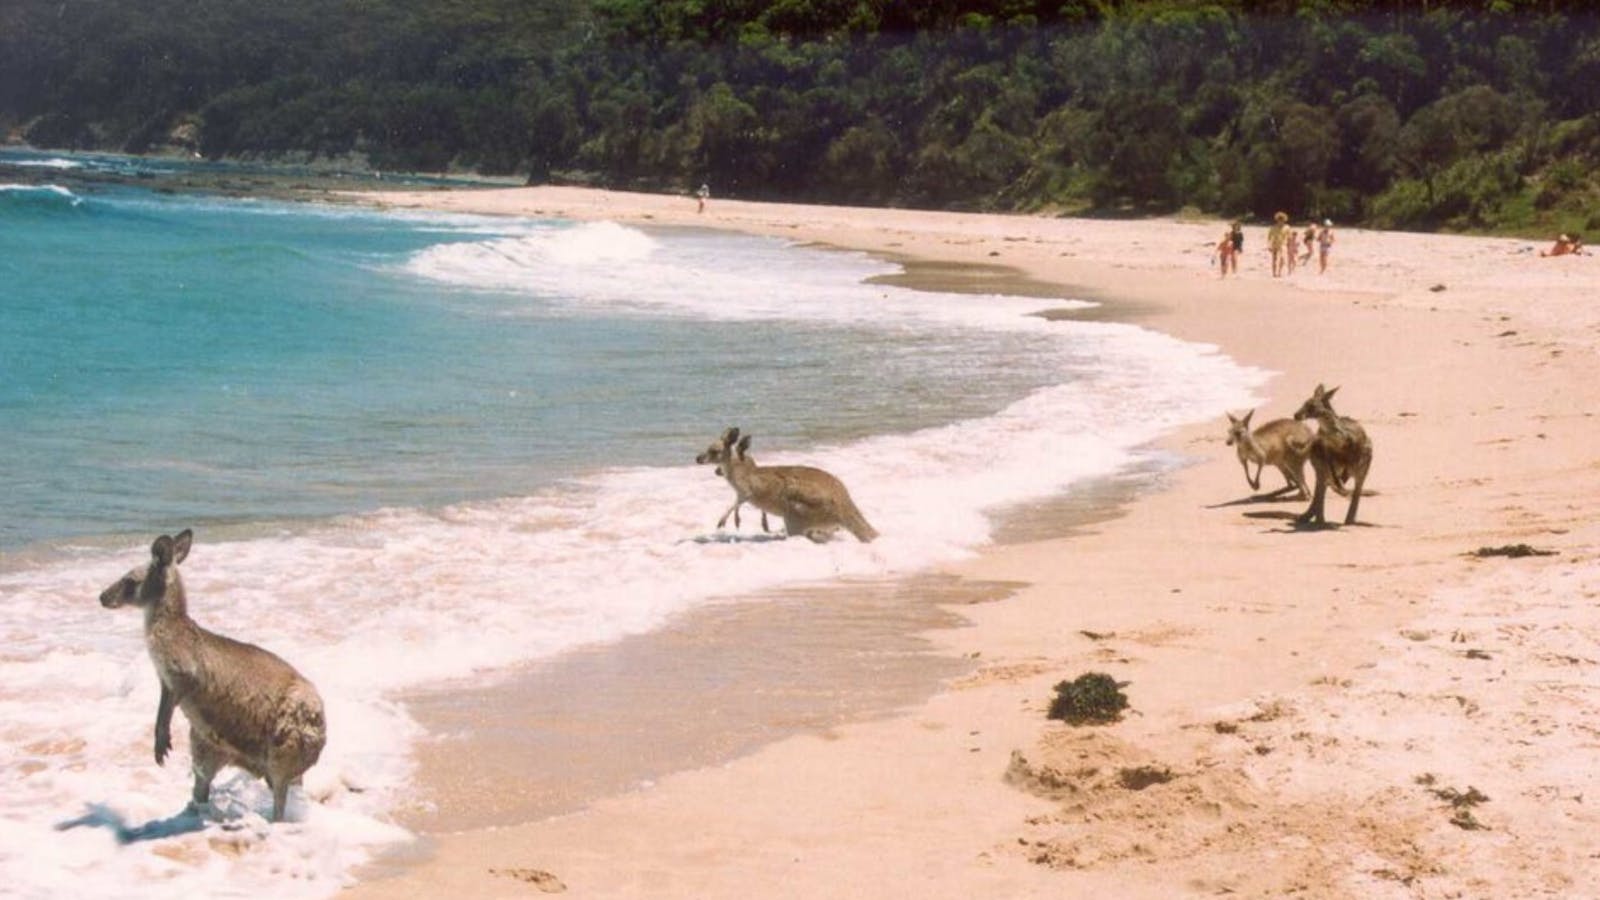 Kangaroos love Kioloa Beach too!